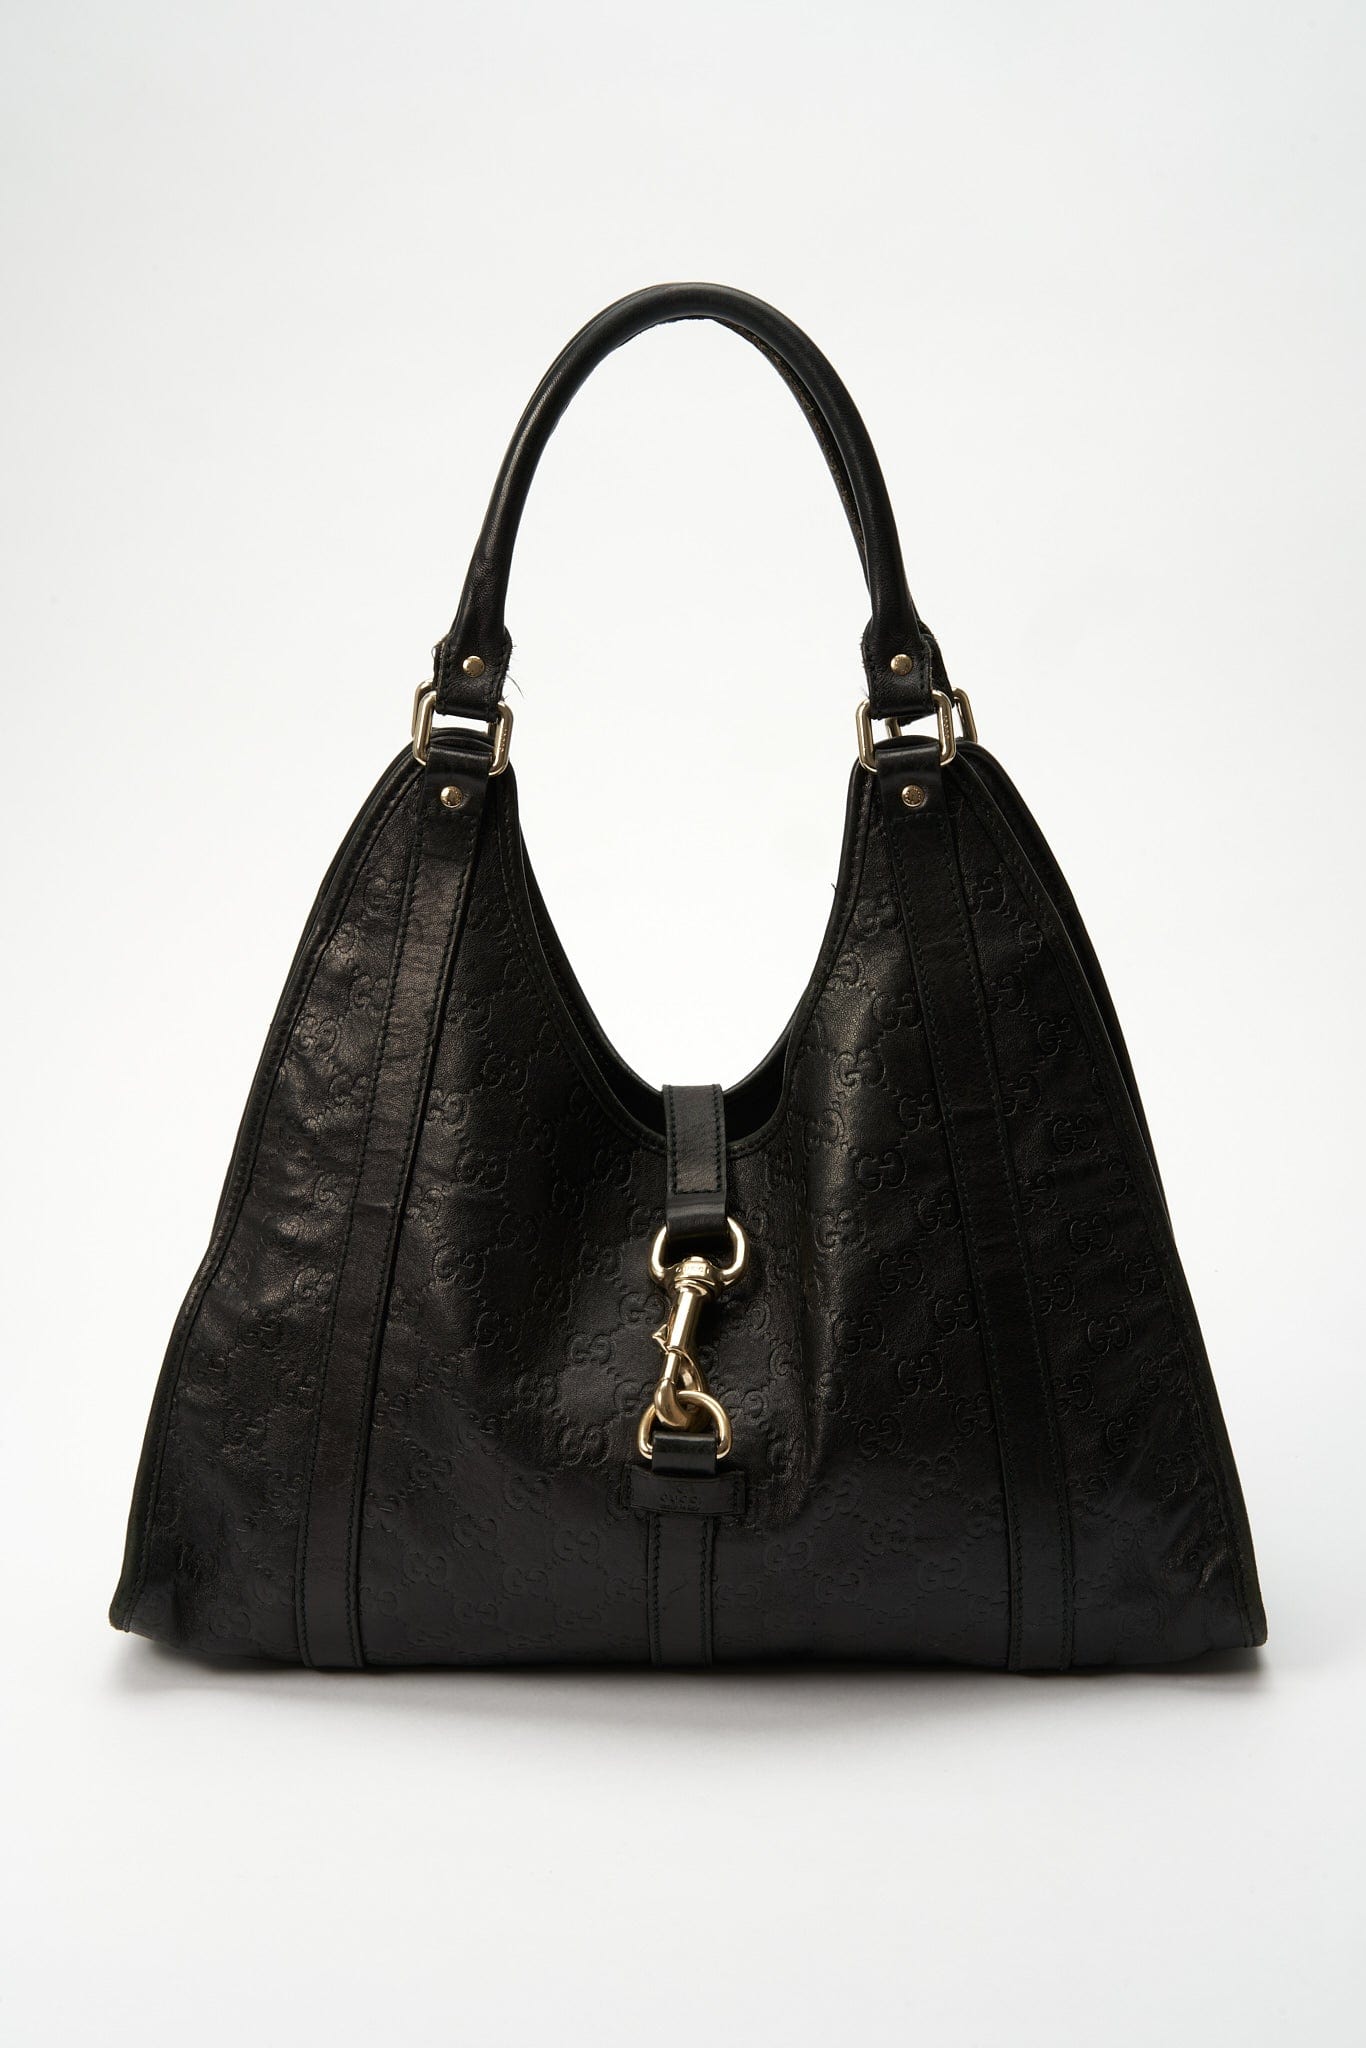 Vintage Gucci Pochette Style Shoulder Bag – The Hosta